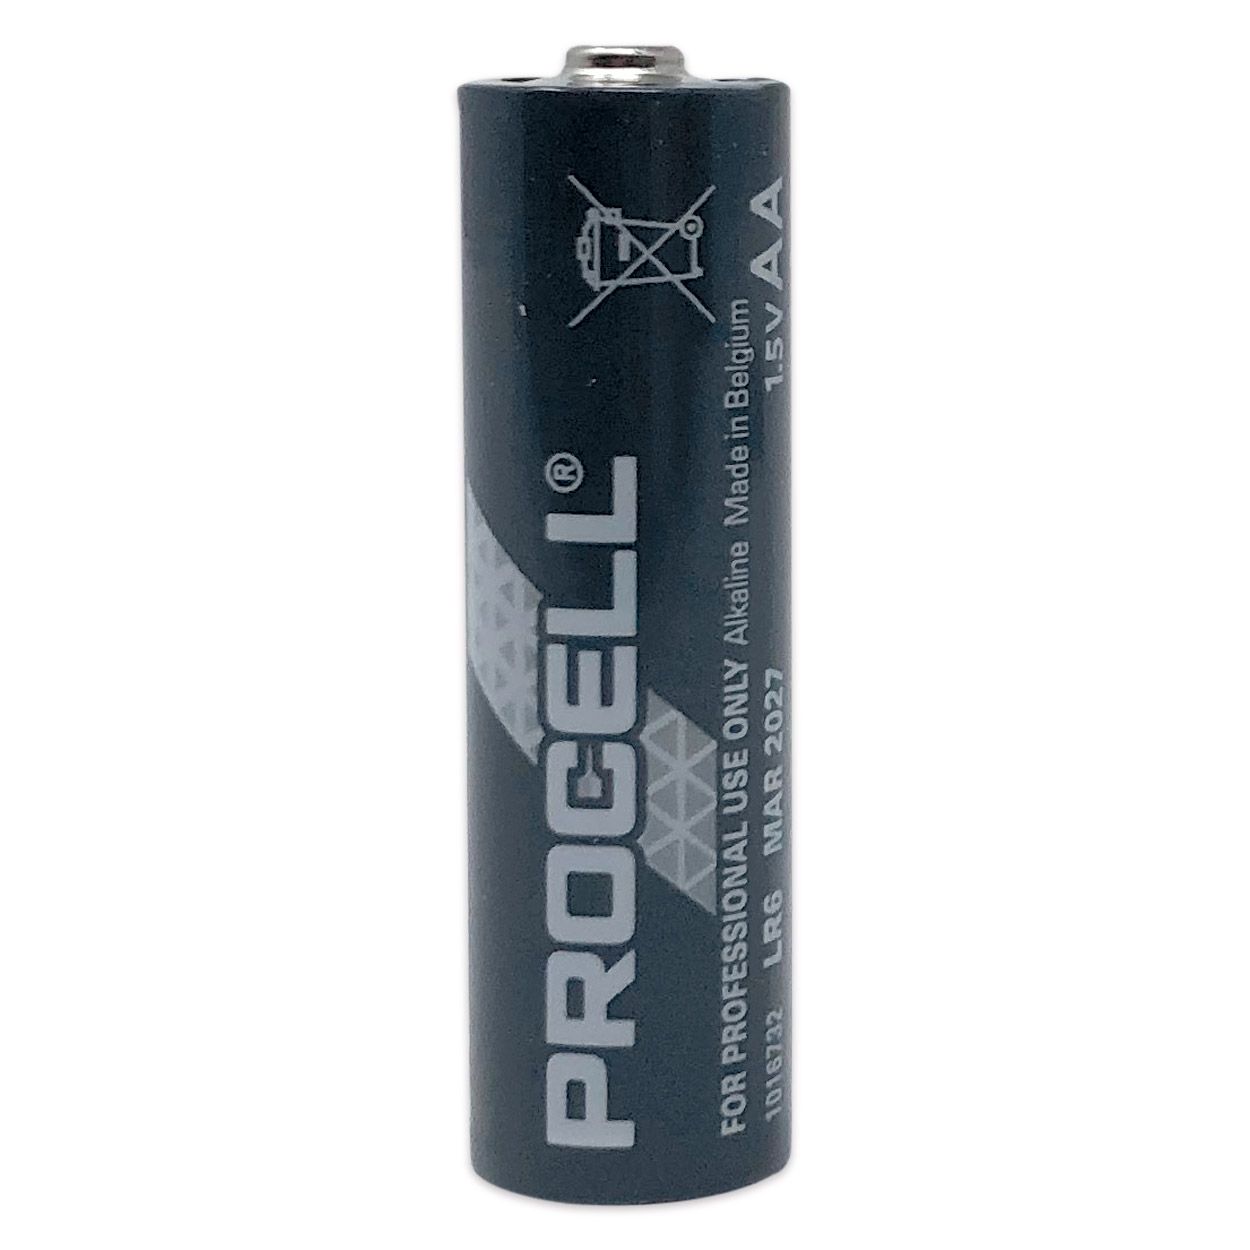 Batterie Duracell Procell Constant Alkaline AA - Packung à 10 Stück